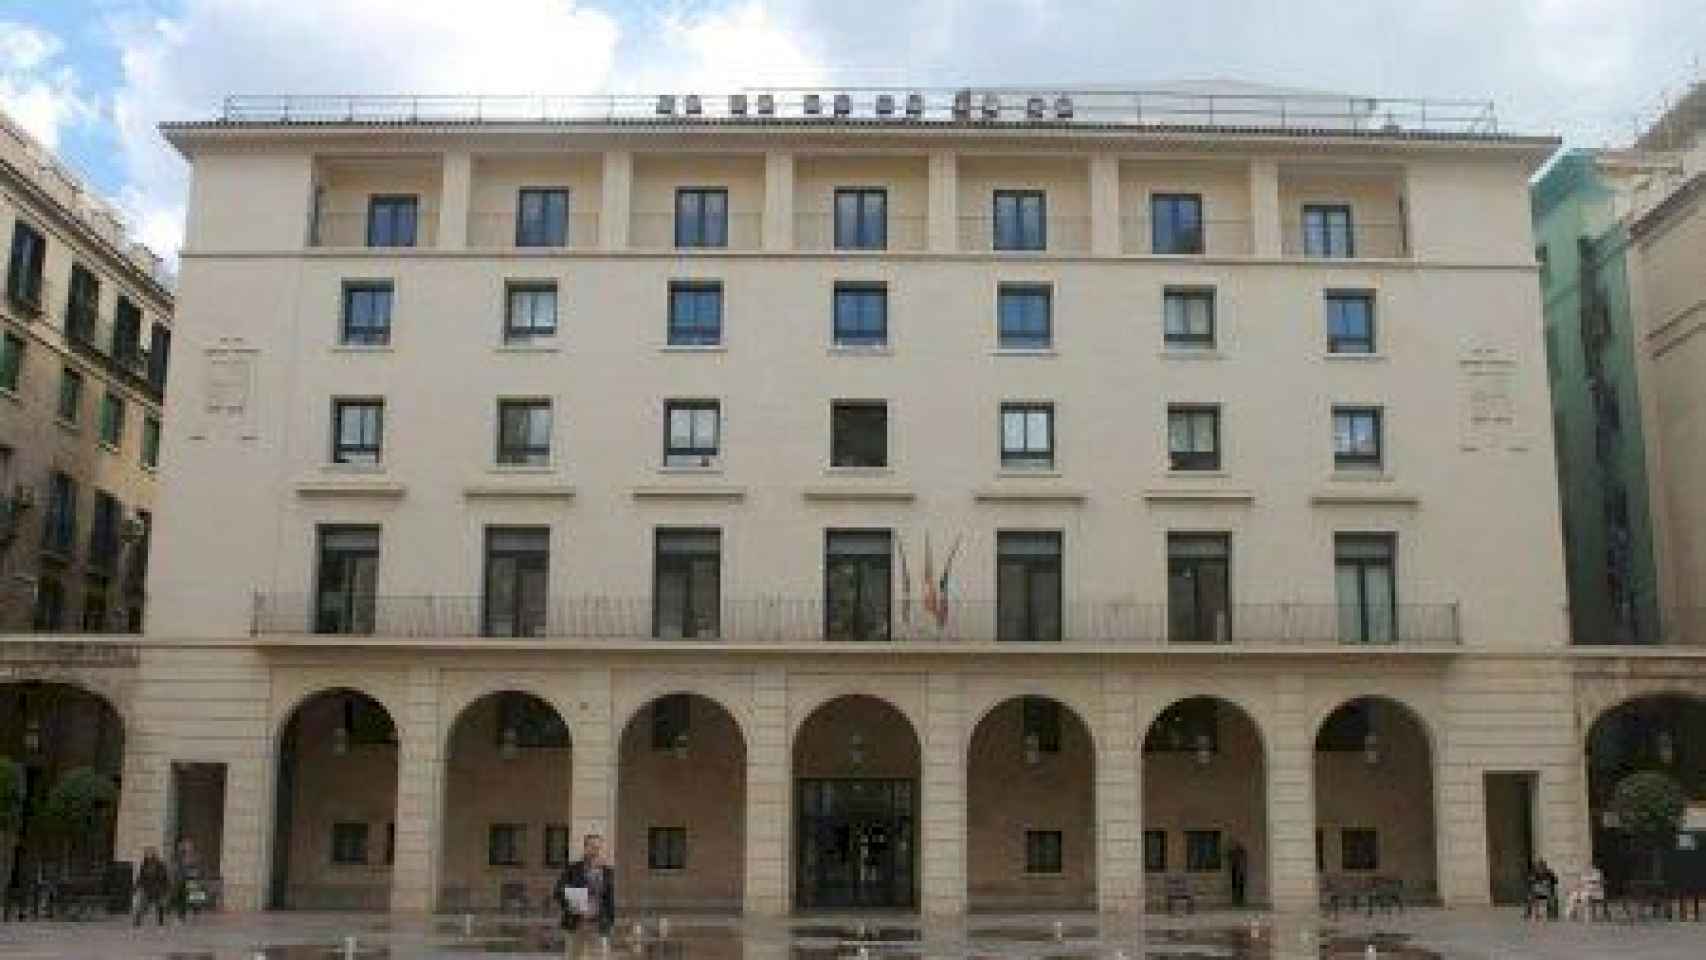 La fachada de la Audiencia de Alicante en imagen de archivo.